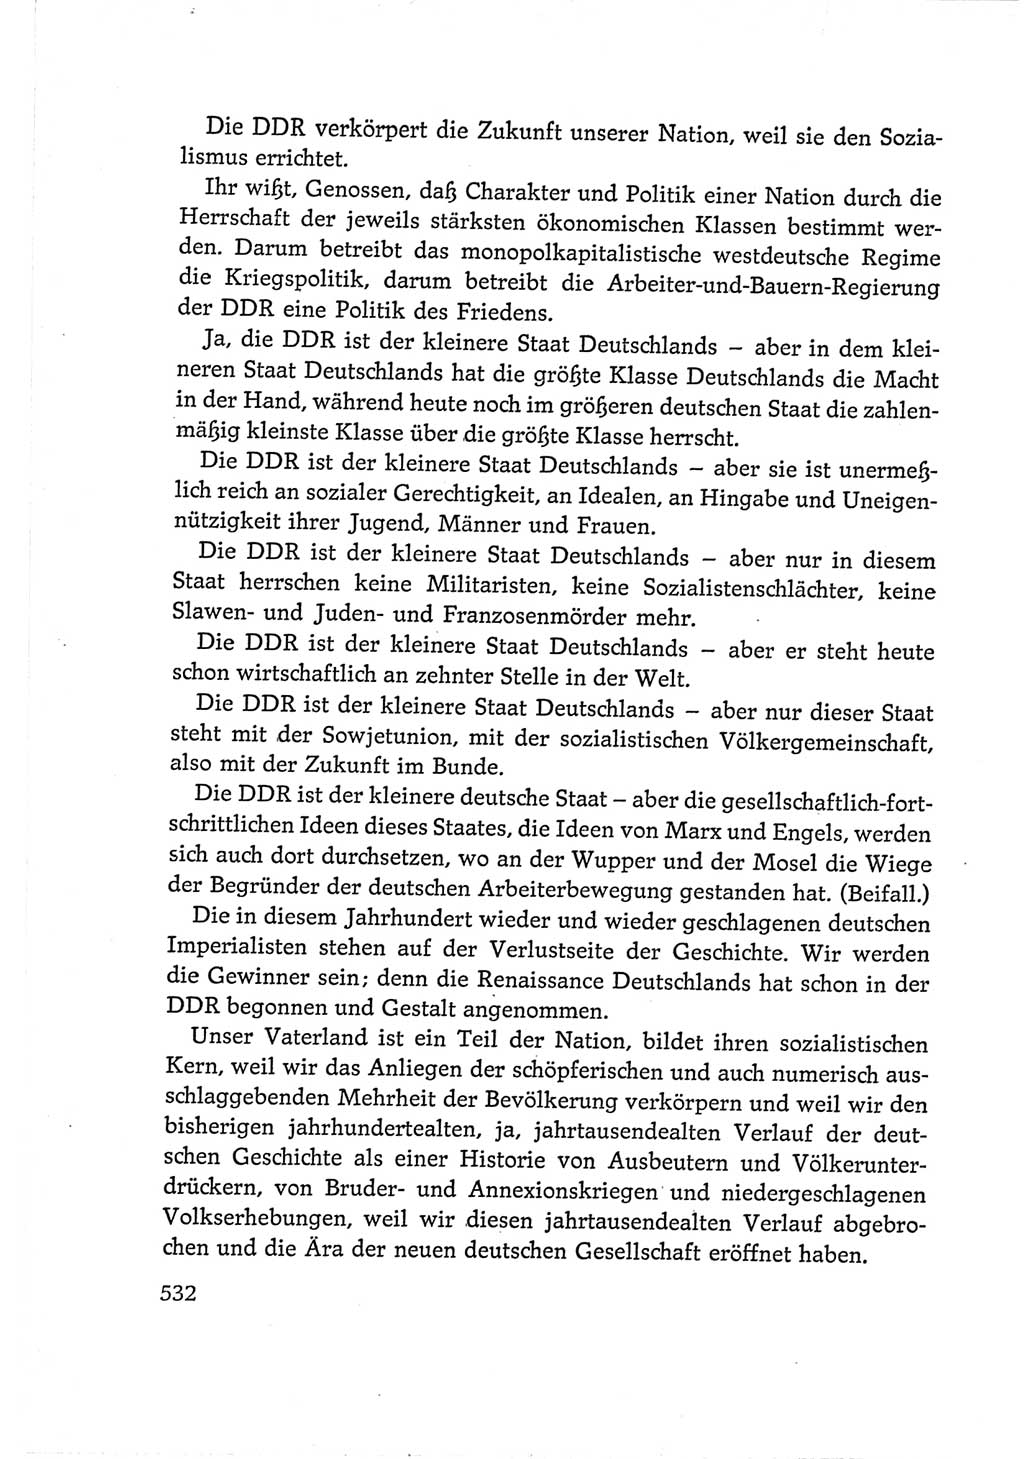 Protokoll der Verhandlungen des Ⅵ. Parteitages der Sozialistischen Einheitspartei Deutschlands (SED) [Deutsche Demokratische Republik (DDR)] 1963, Band Ⅰ, Seite 532 (Prot. Verh. Ⅵ. PT SED DDR 1963, Bd. Ⅰ, S. 532)